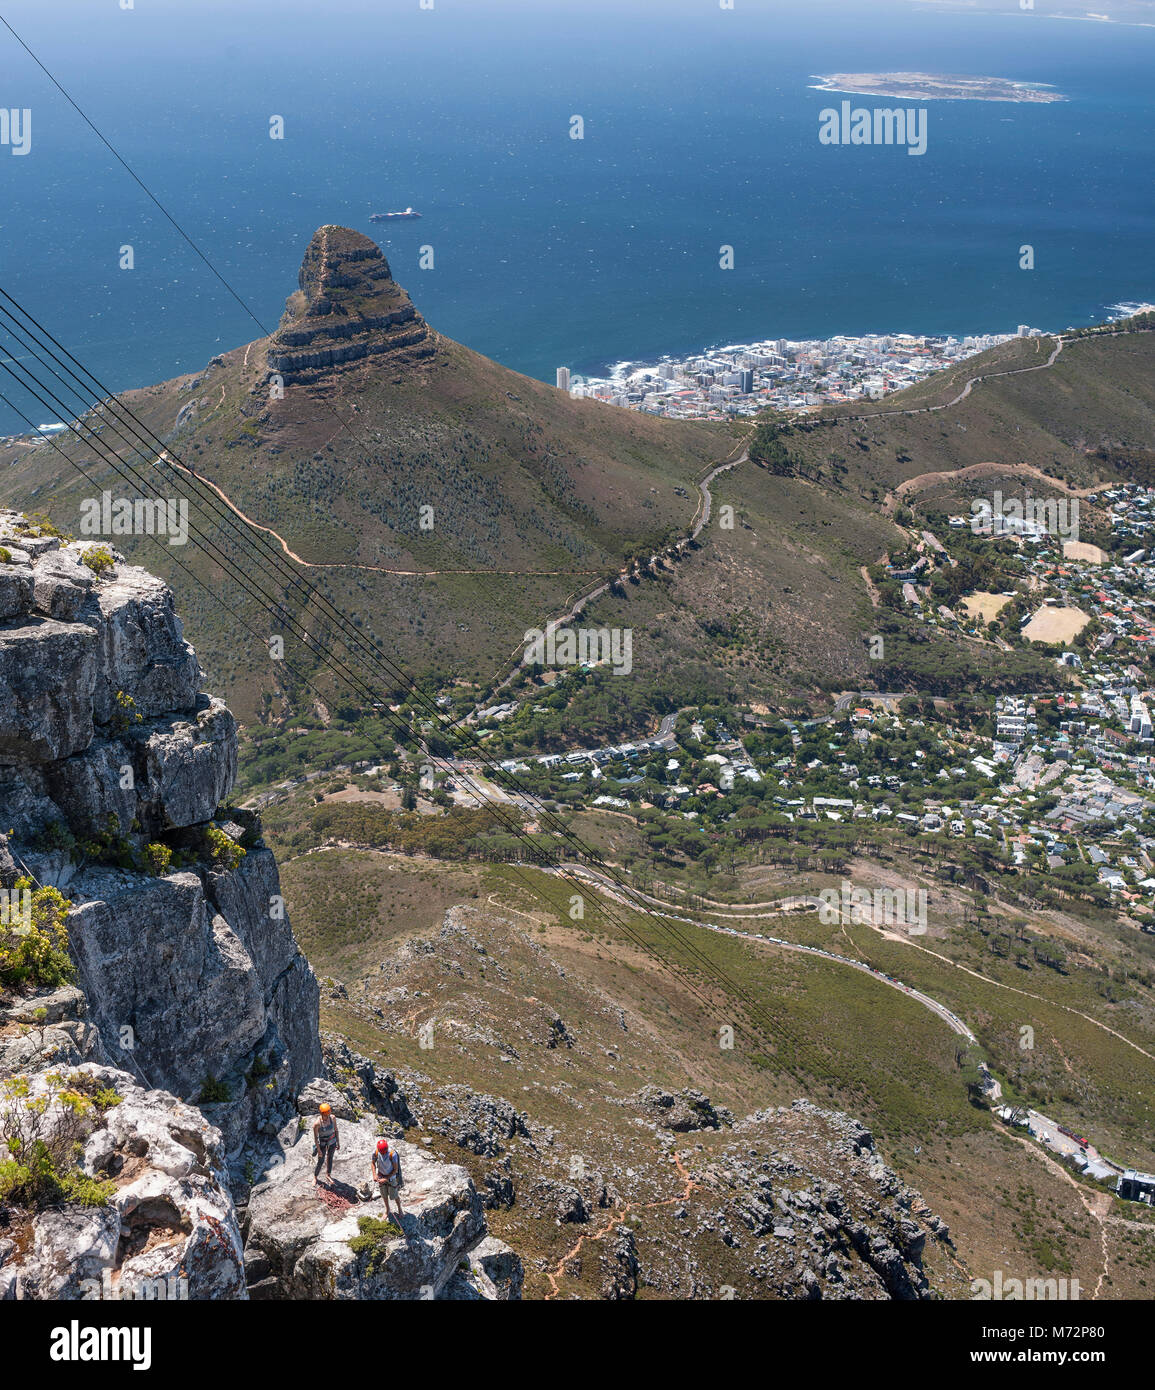 Kletterer Vorbereitung knapp unter dem Gipfel des Tafelberges in Kapstadt zu klettern. Lion's Head, Robben Island und den Atlantischen Kapstadts Ostküste ca Stockfoto